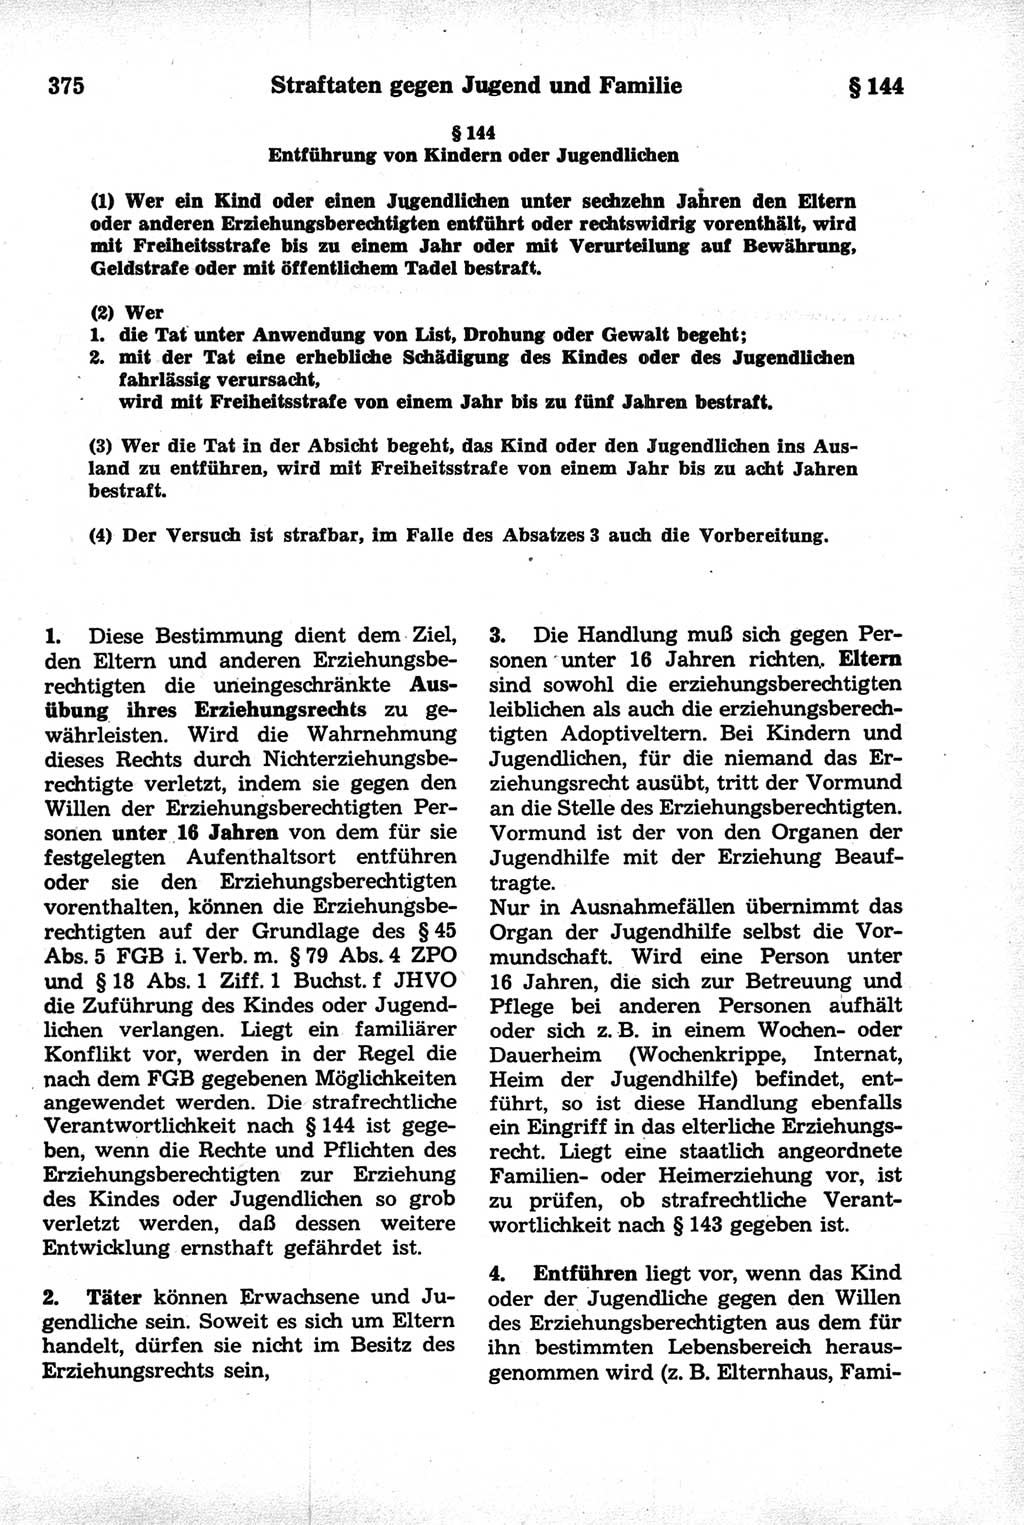 Strafrecht der Deutschen Demokratischen Republik (DDR), Kommentar zum Strafgesetzbuch (StGB) 1981, Seite 375 (Strafr. DDR Komm. StGB 1981, S. 375)